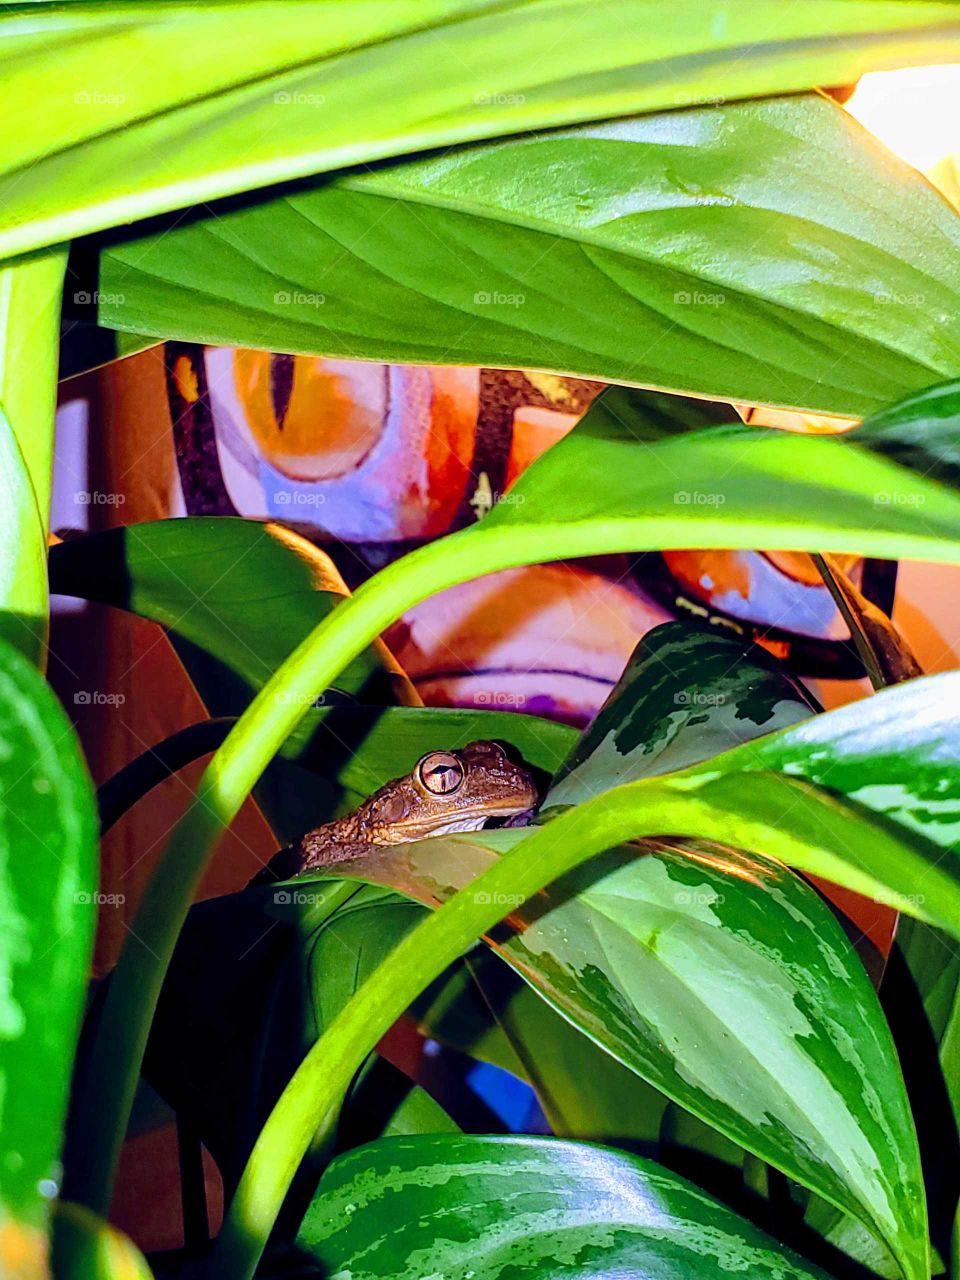 Hello froggy